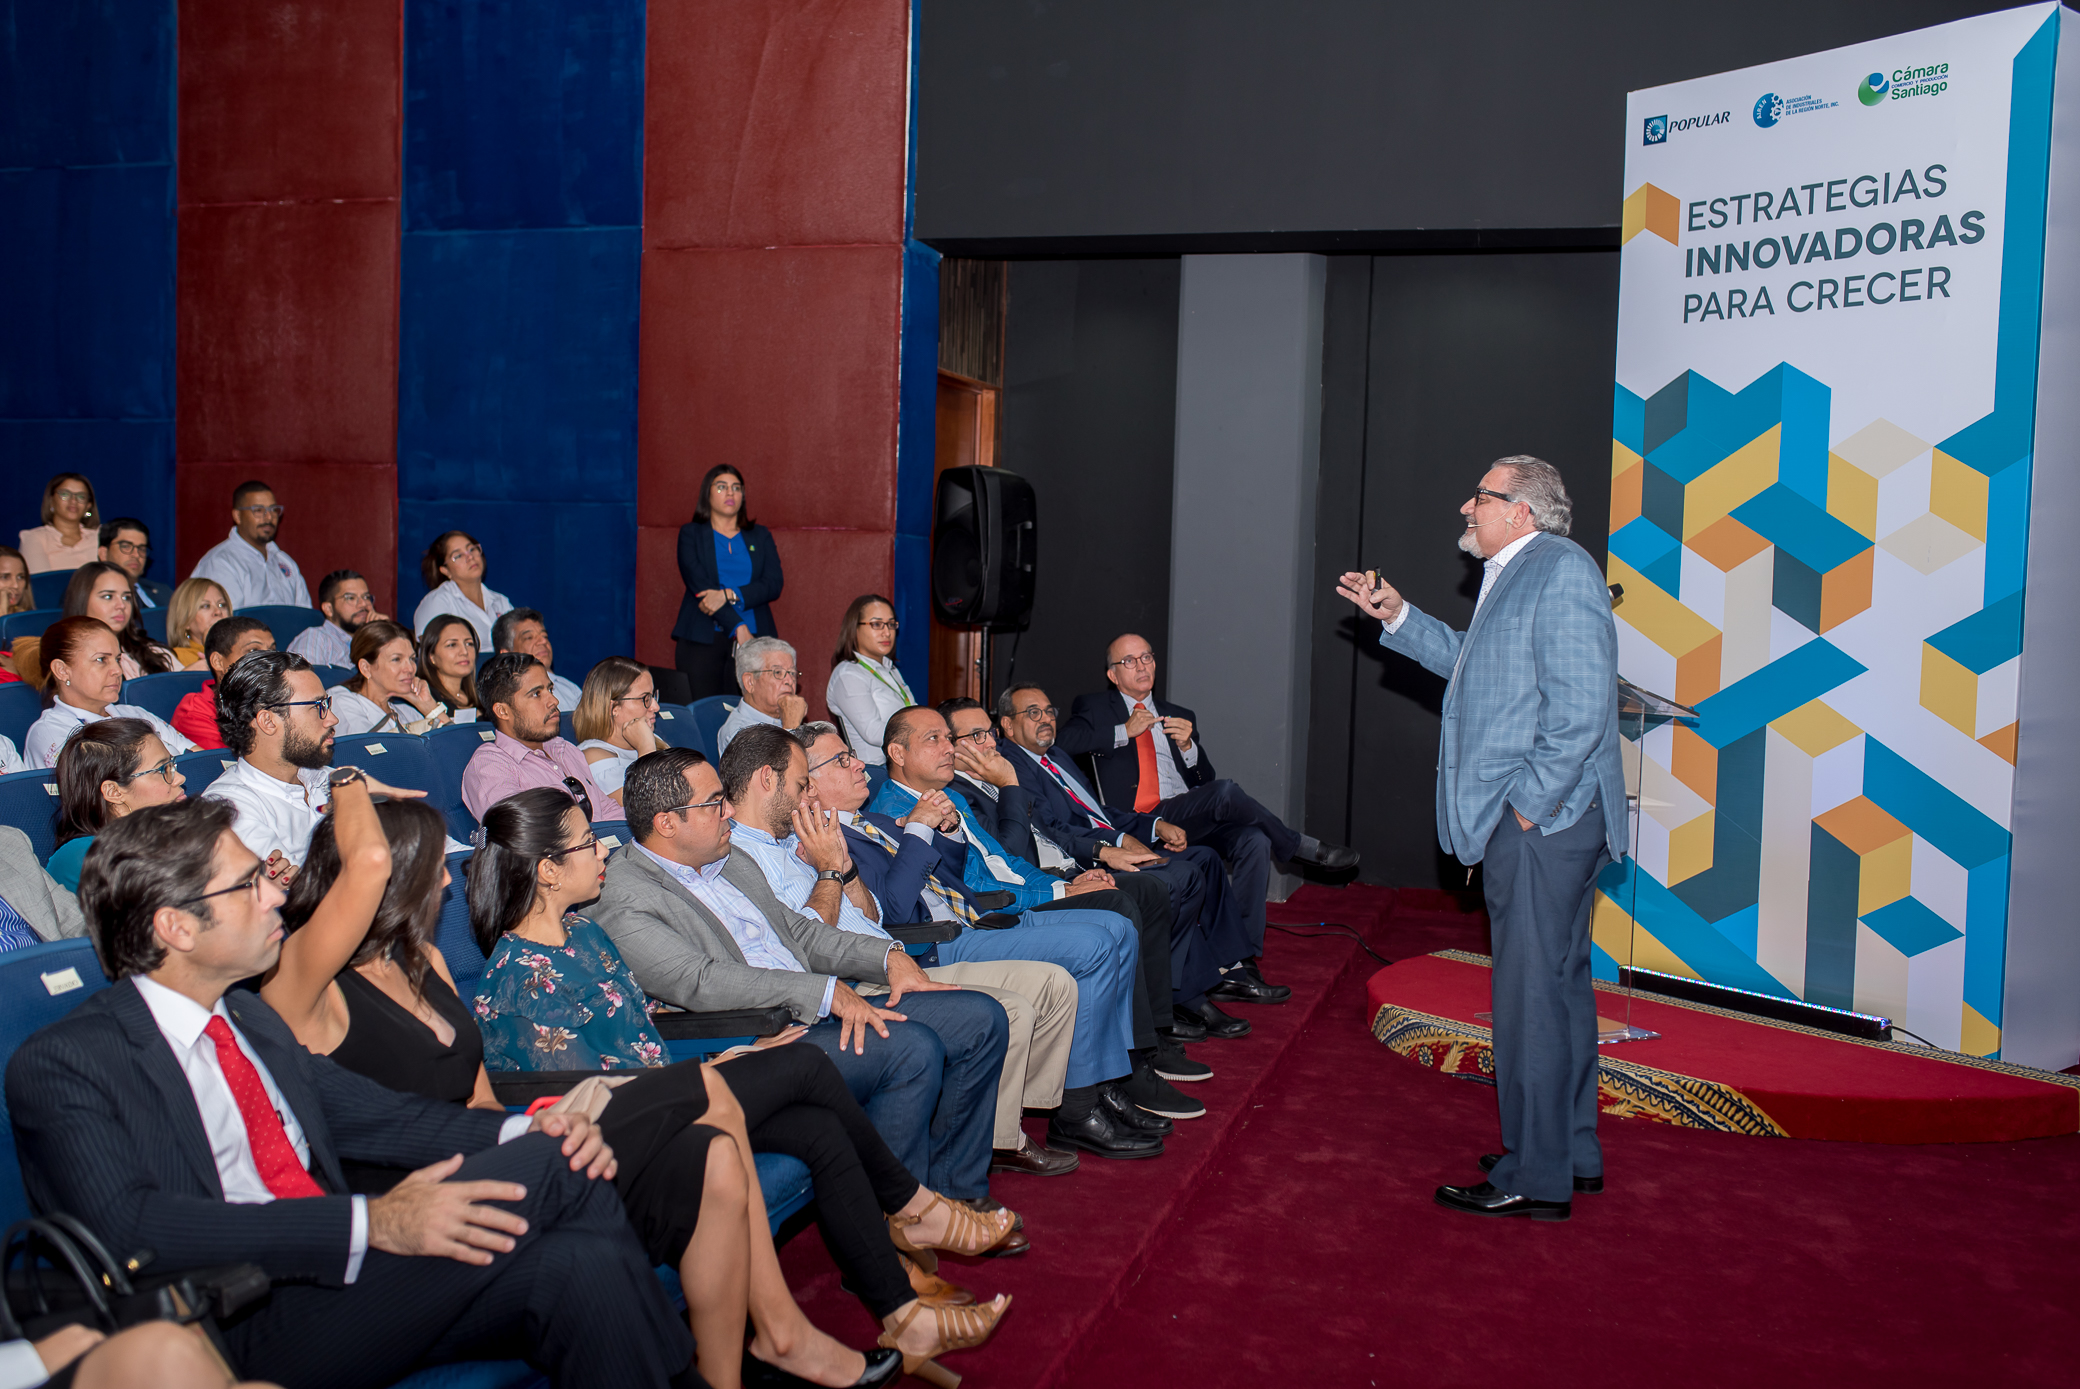 Banco Popular, AIREN y Cámara de Comercio de Santiago realizan conferencia Expo Cibao 2019: “Estrategias Innovadoras para Crecer”